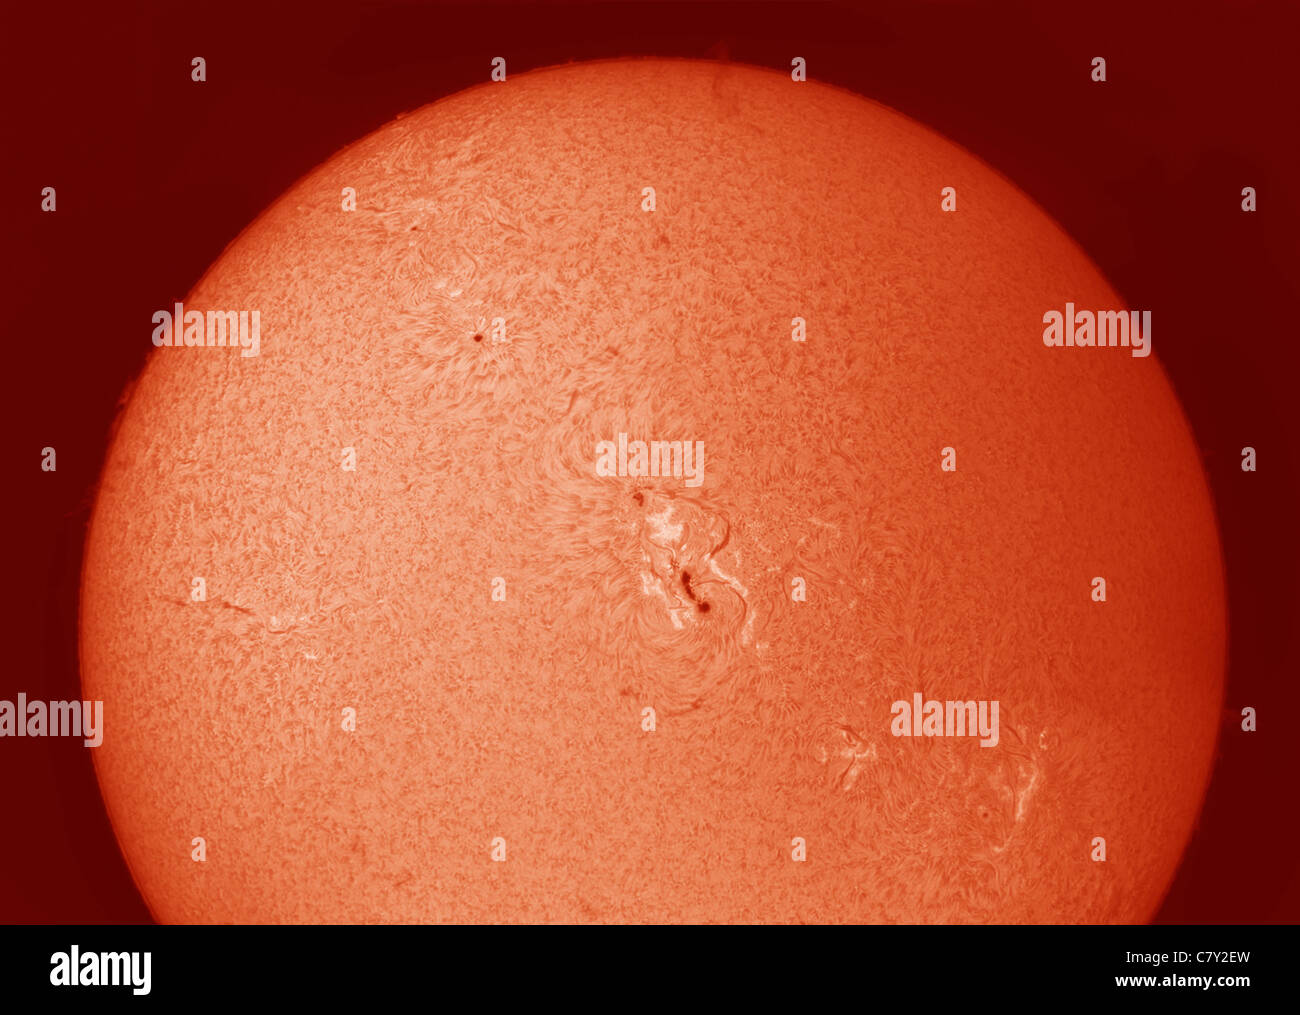 Oberfläche der Sonne fotografiert in Wasserstoff Alpha am 28.9.11 mit Sonnenflecken 11302 prominent in der Mitte Stockfoto